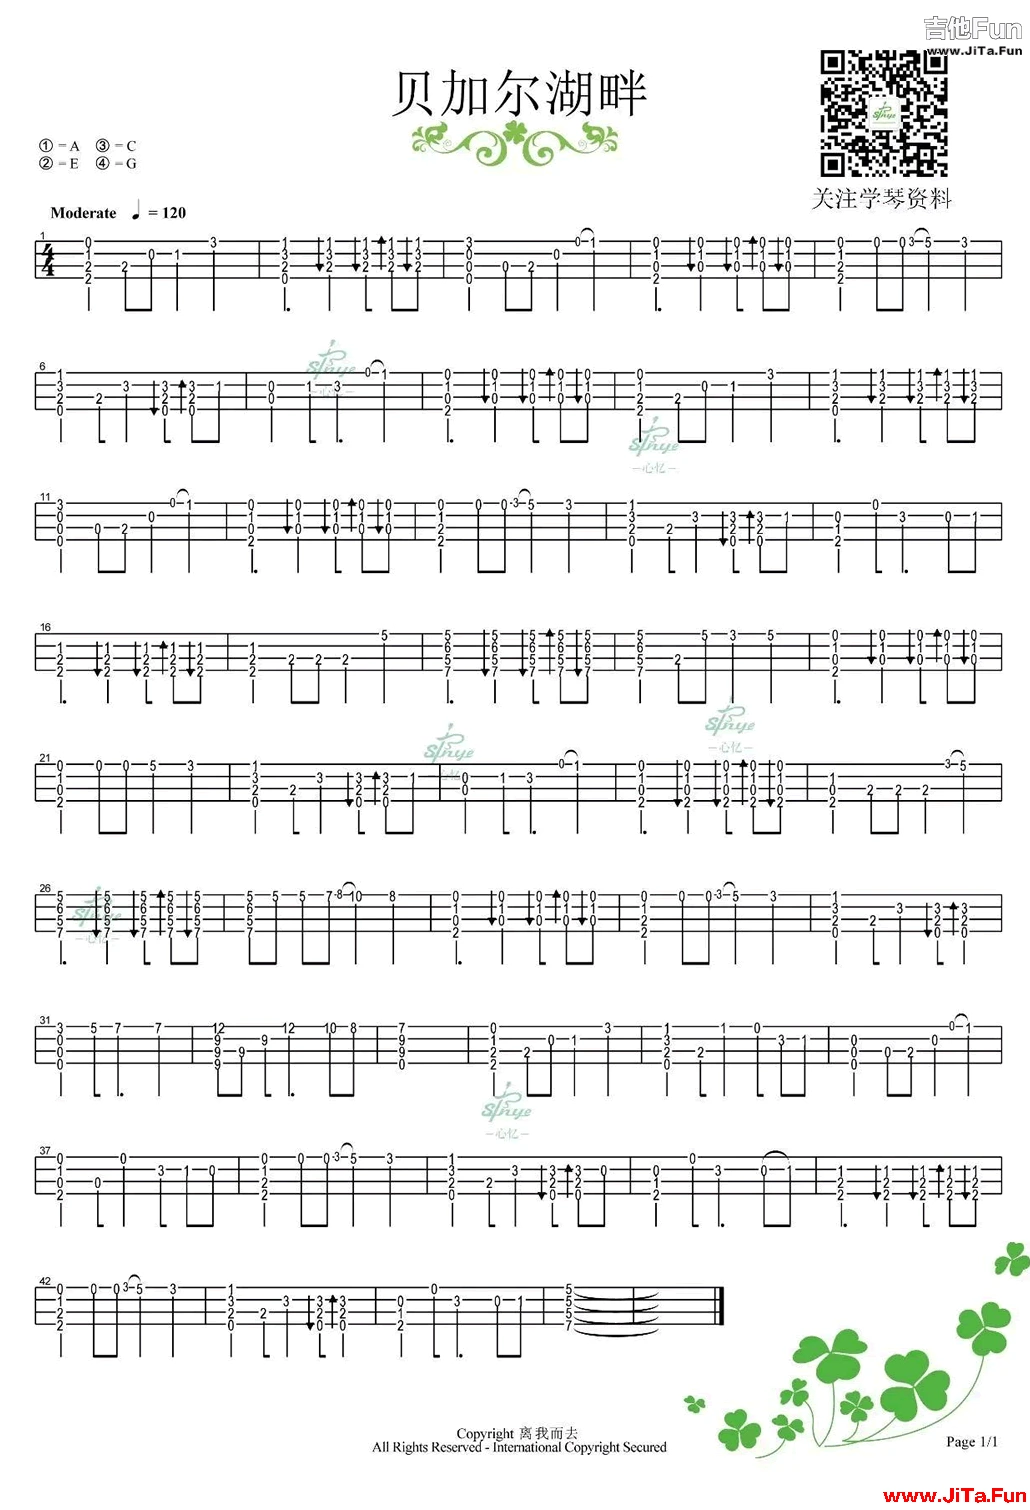 貝加爾湖畔ukulele指彈譜